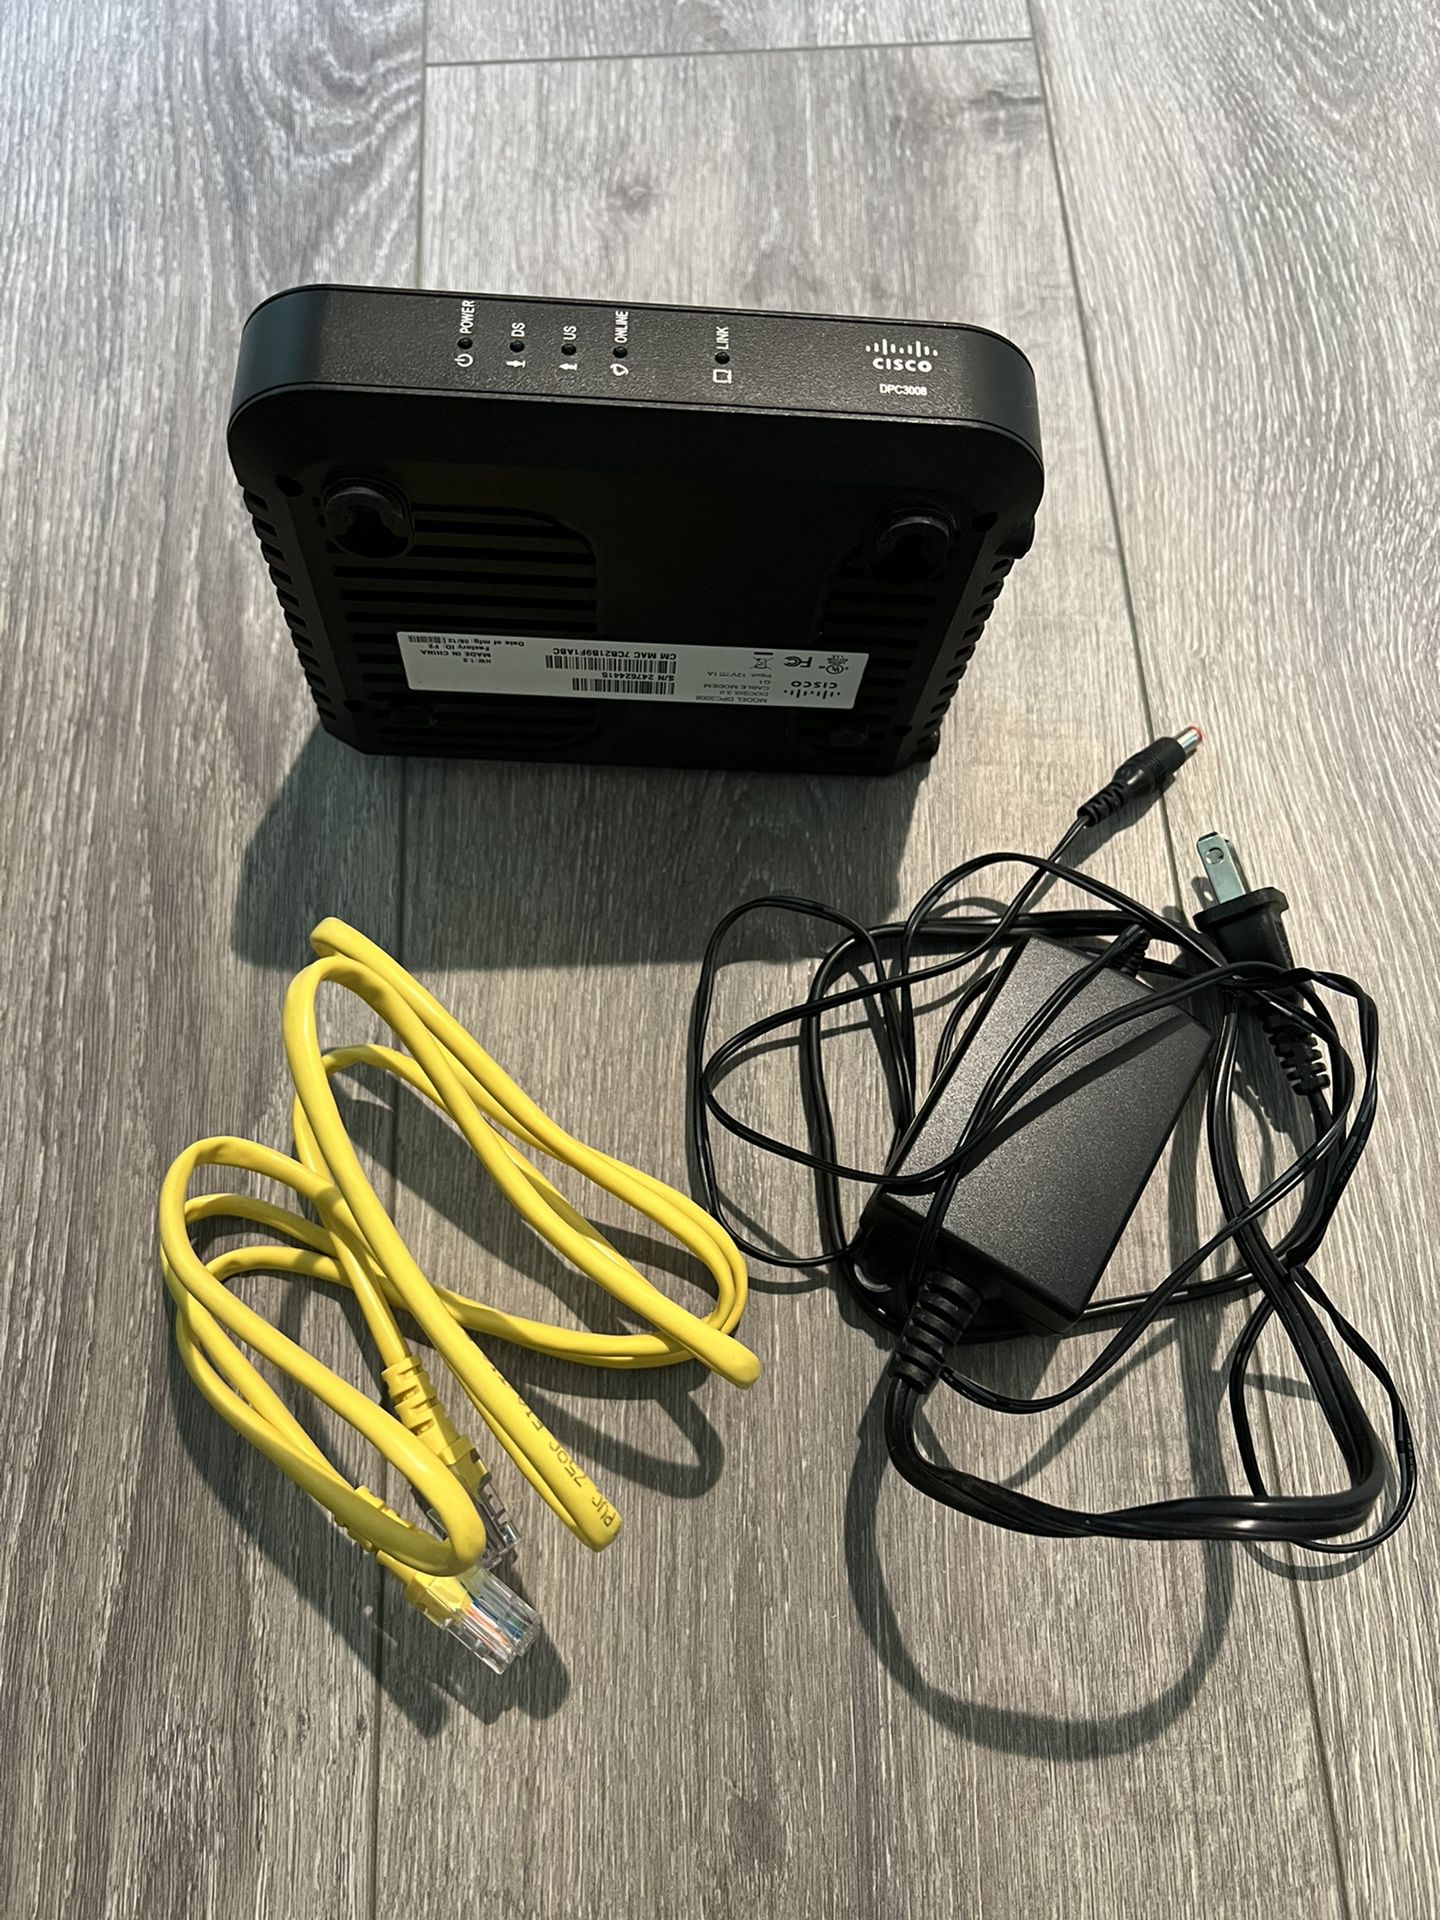 Cisco DPC3008 DOCSIS 3.0 cable modem (Comcast/xFinity compatible)